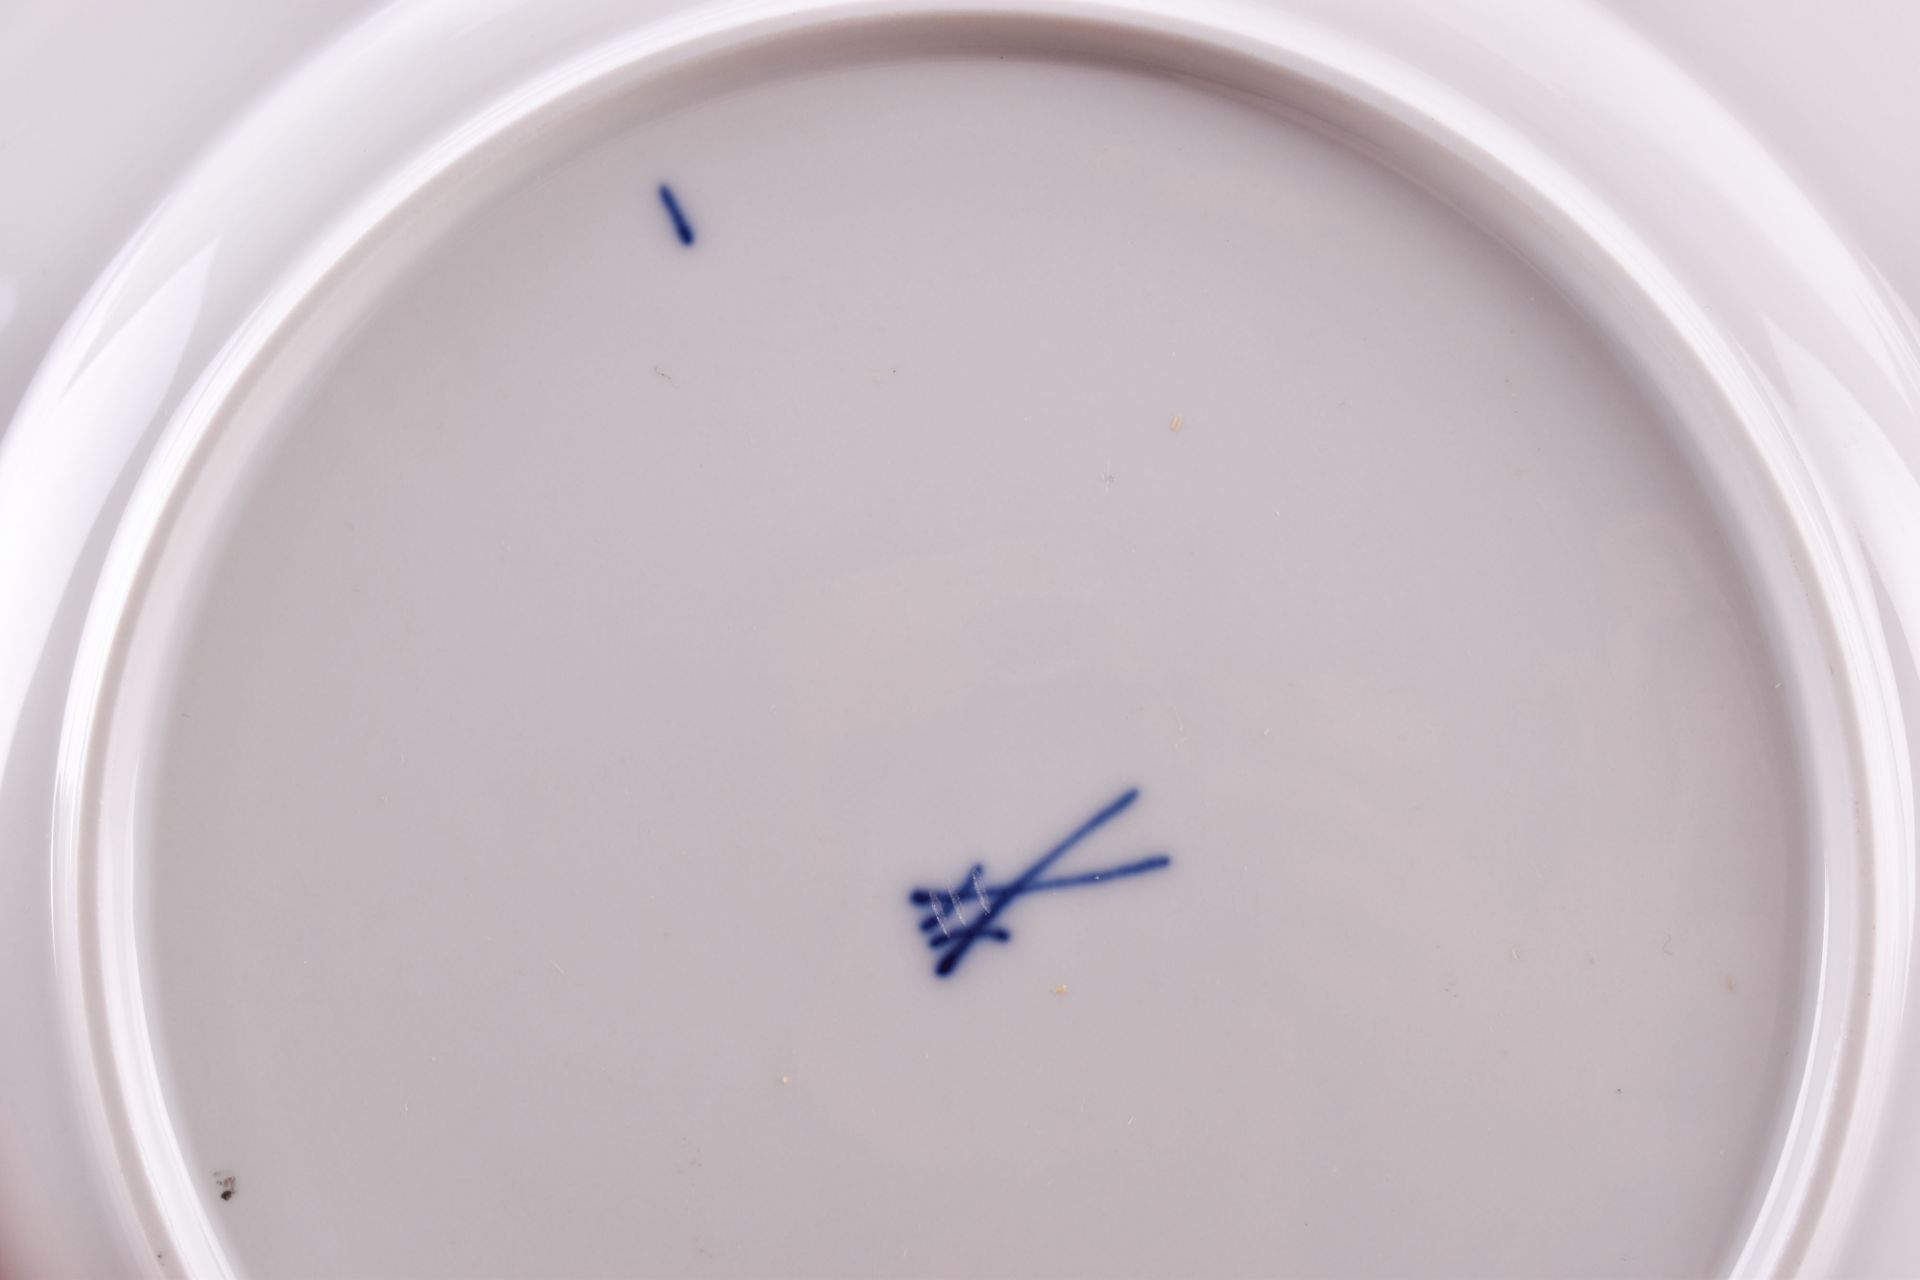 Konvolut Meissen 20 Jh.Dekor Weinlaub, 9 große Teller, blaue Schwertermarke, Ø 25,5 cm, verschiedene - Image 6 of 6